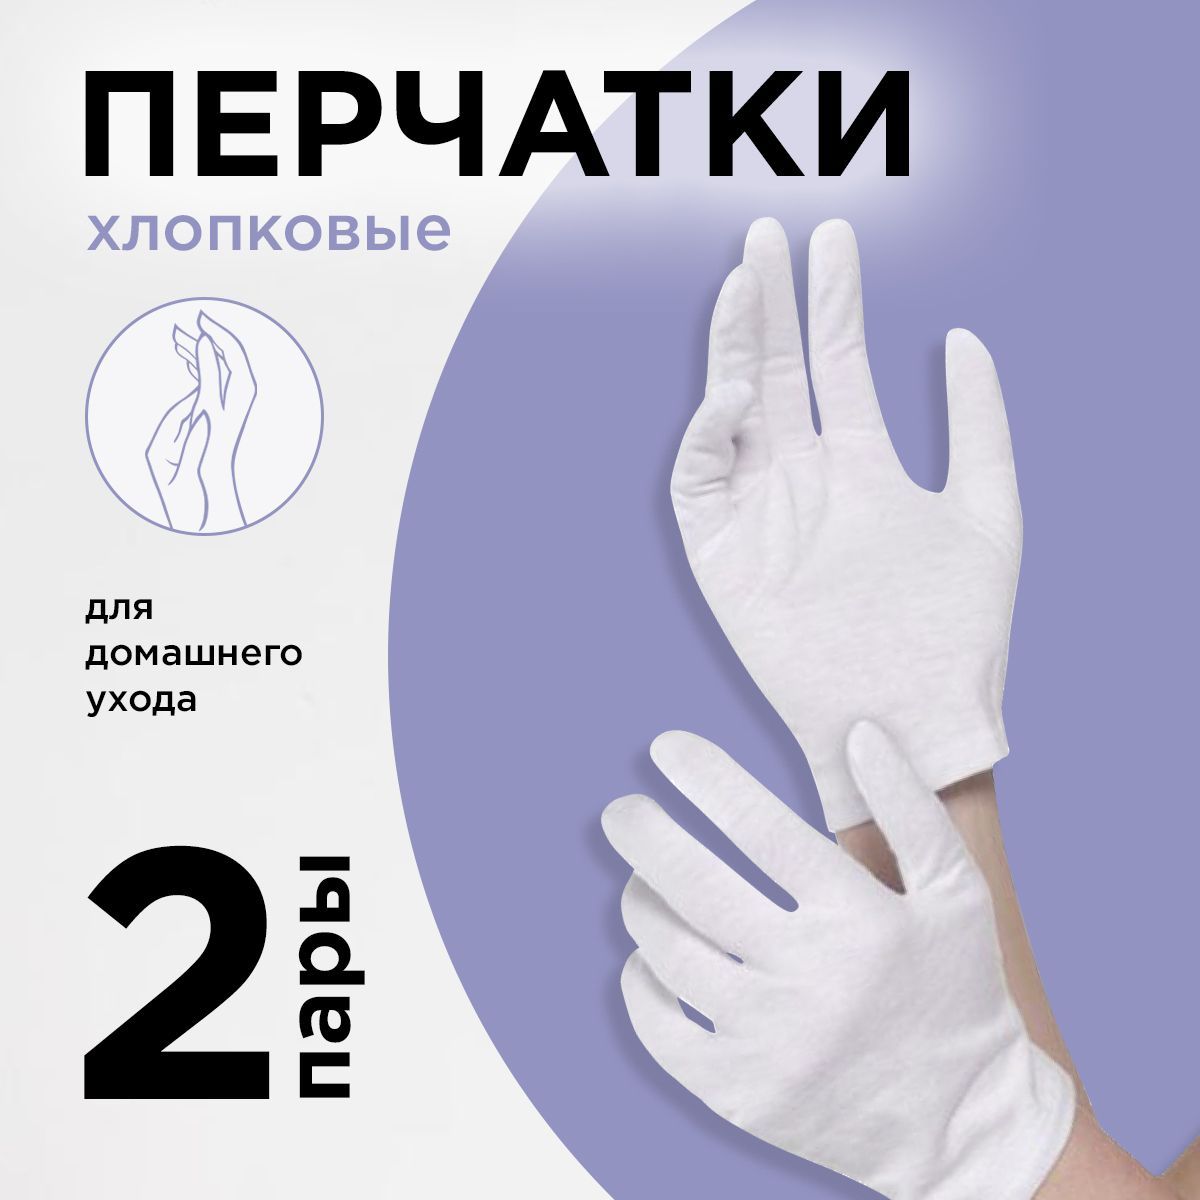 Греющие перчатки для рук - полезные аксессуары для холодной погоды